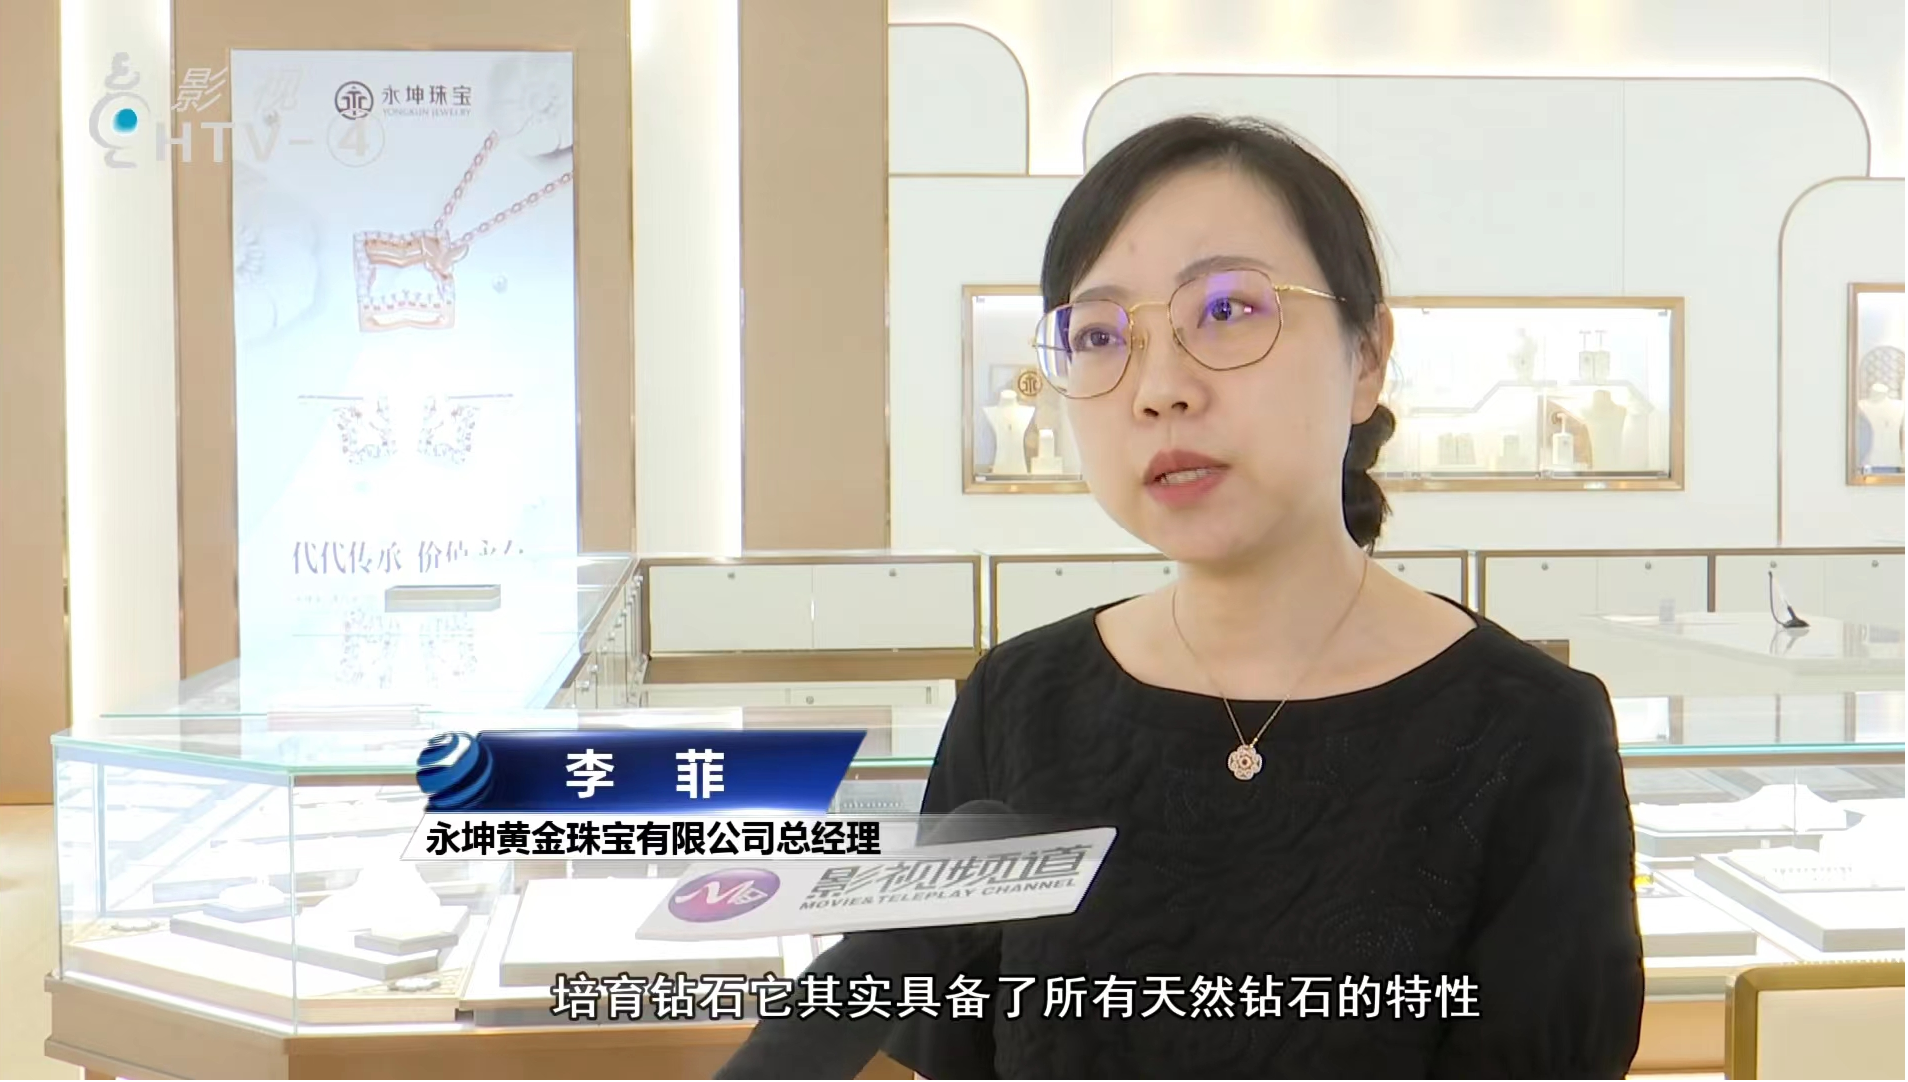 永坤珠寶總經理李菲接受杭州電視臺專訪